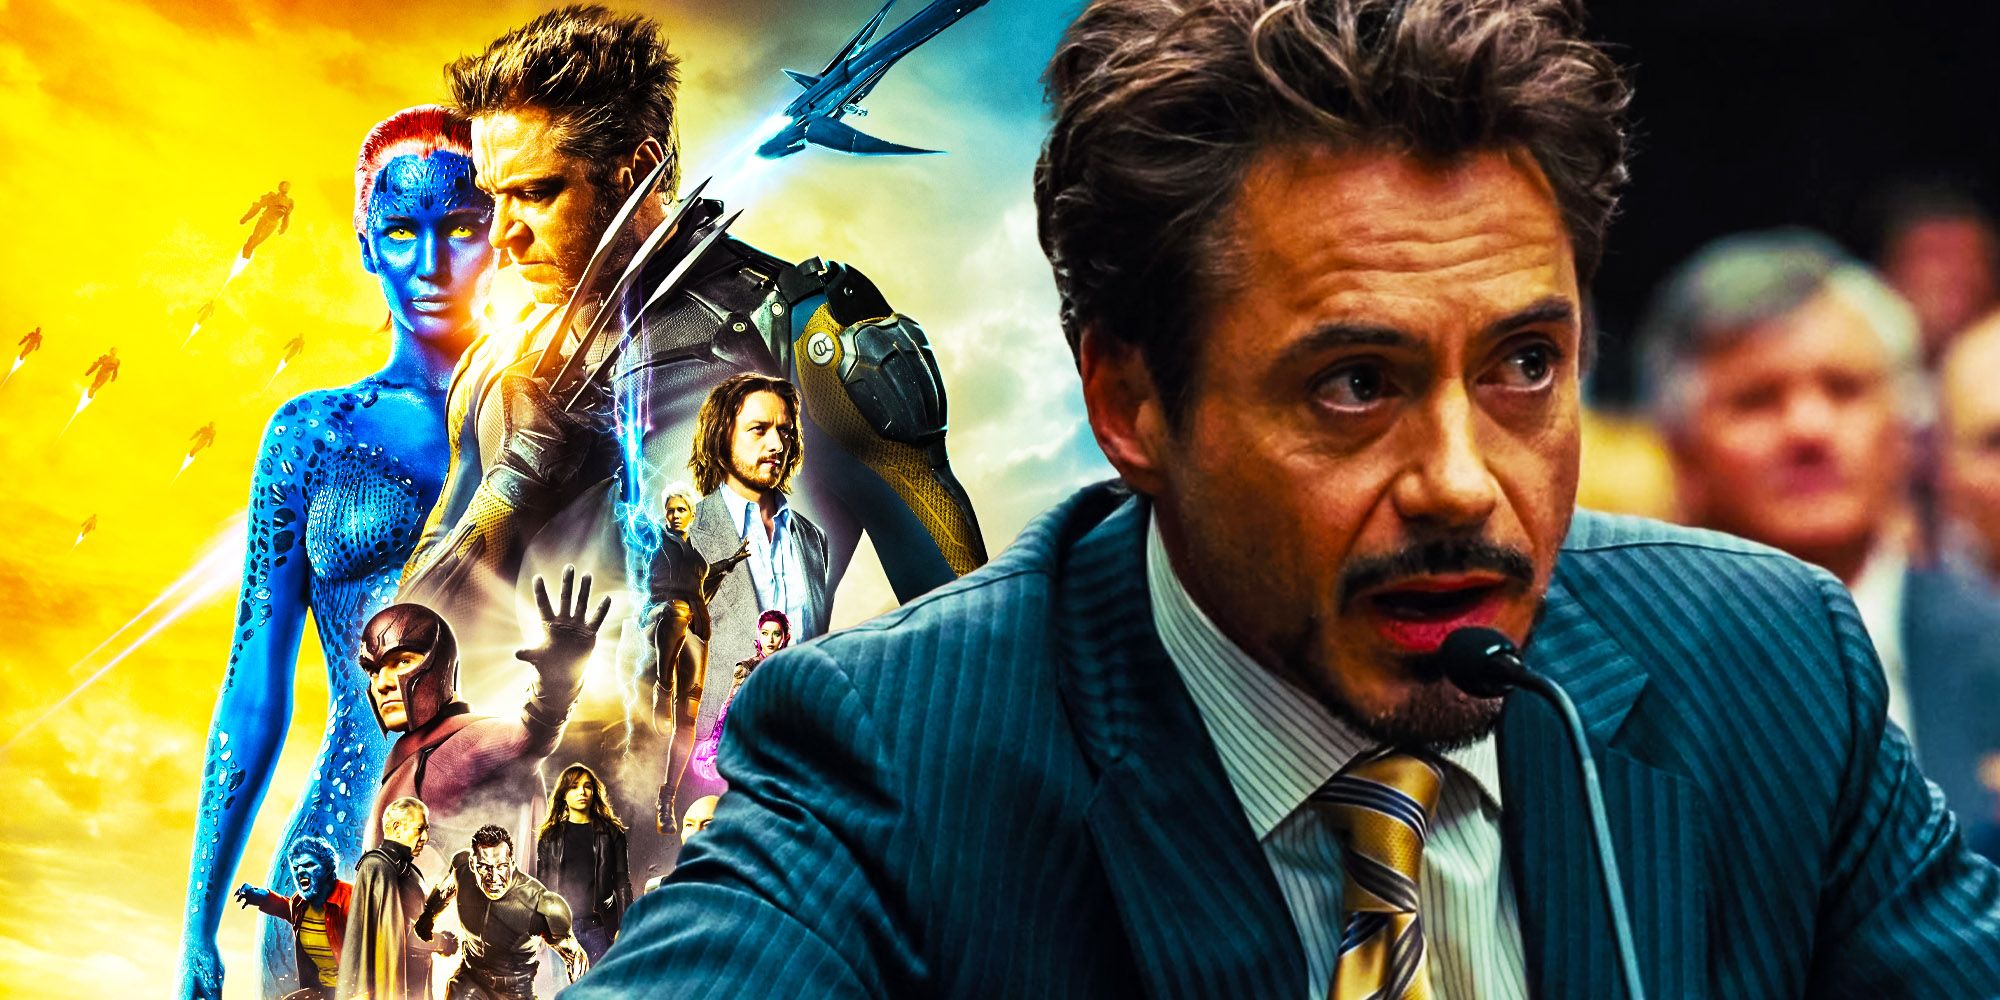 Tony Stark and the Xmen